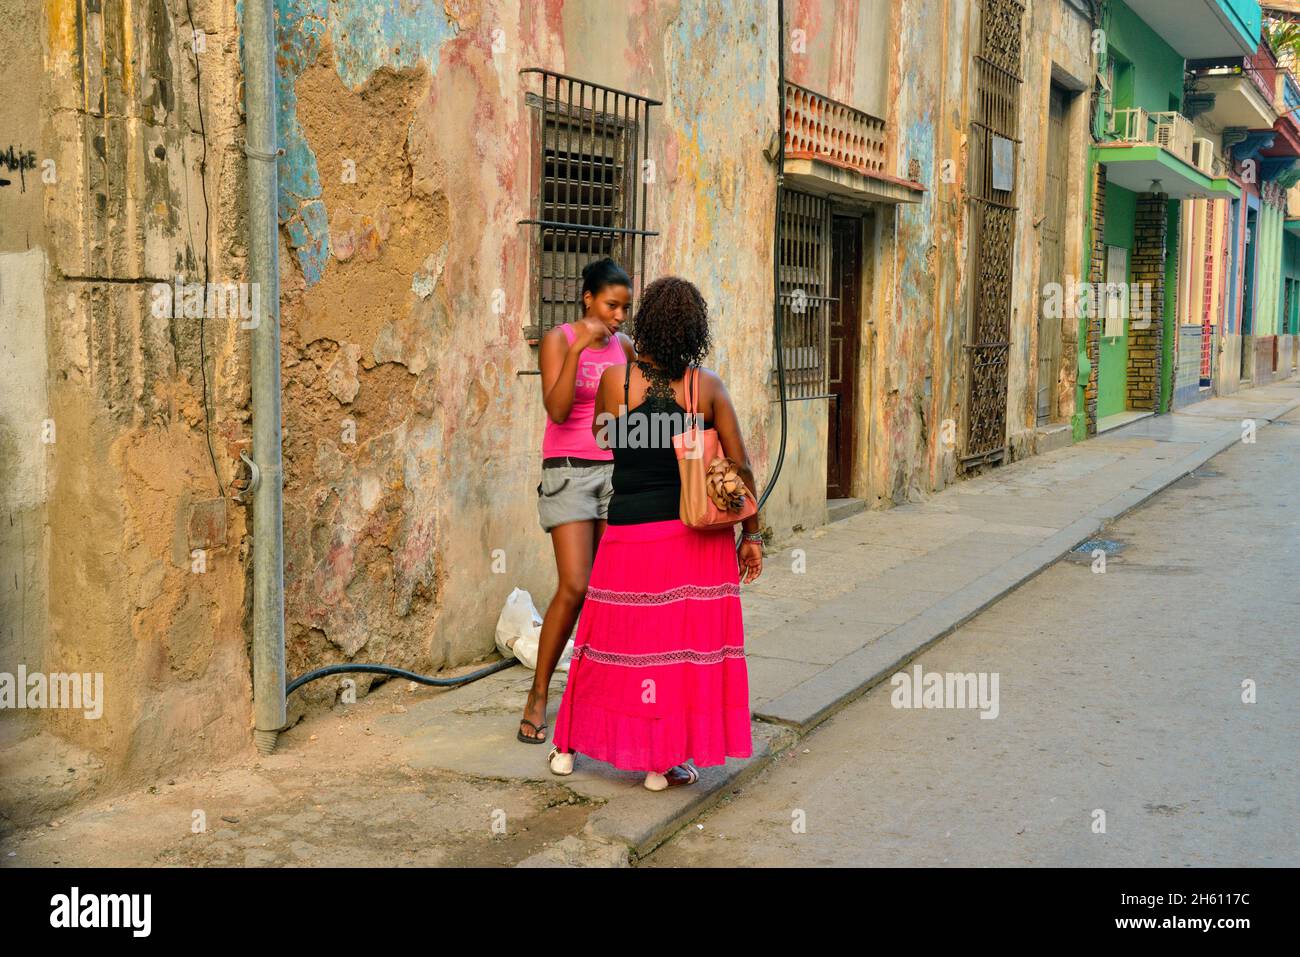 Straßenszene im Zentrum von Havanna. Zwei Frauen unterhalten sich auf der Straße, La Habana (Havanna), Habana, Kuba Stockfoto